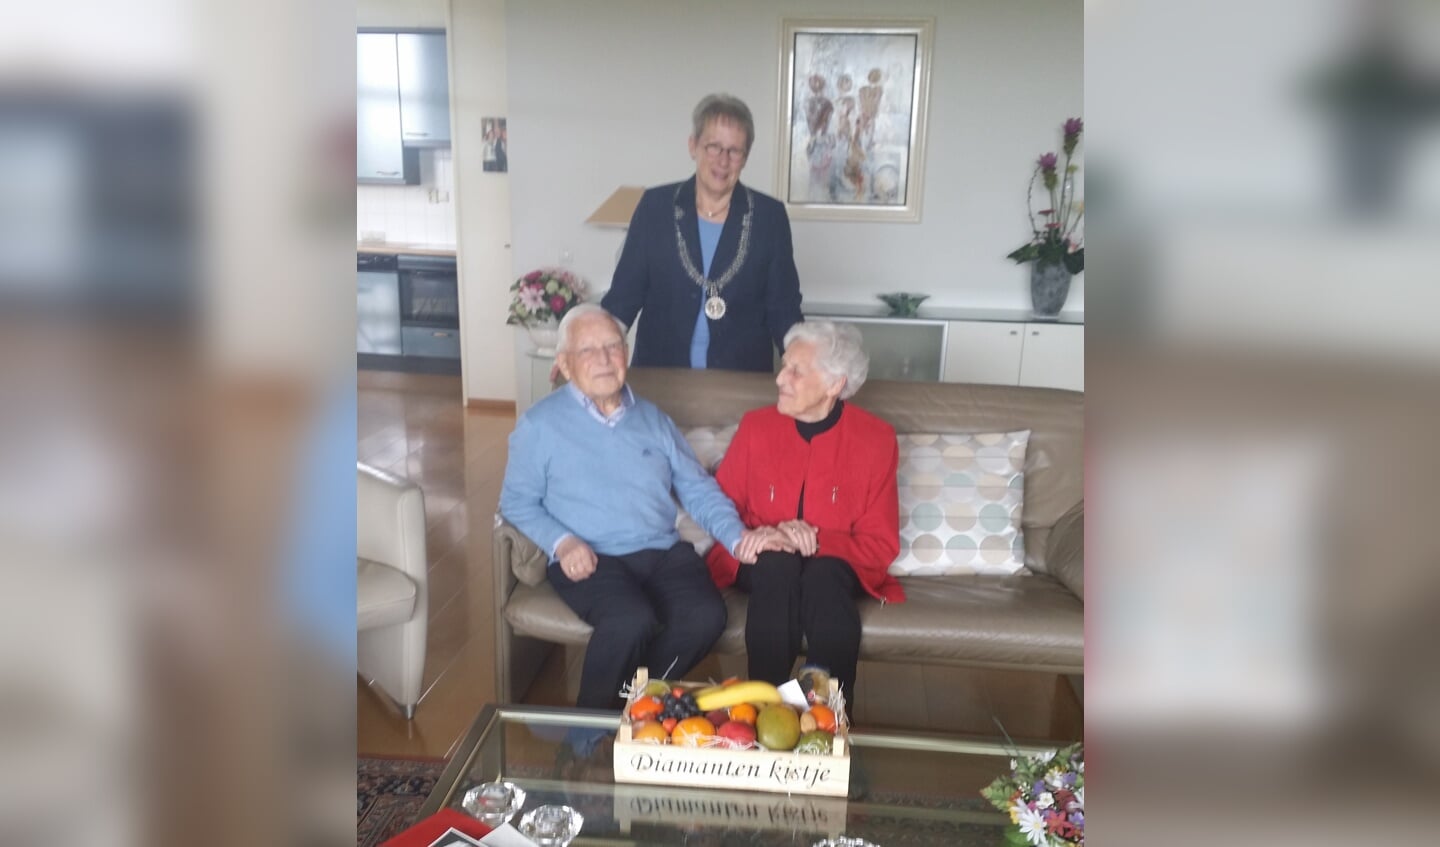 Op 26 april was het echtpaar Boot 60 jaar getrouwd. Locoburgemeester Aletta Hekker kwam hen feliciteren.